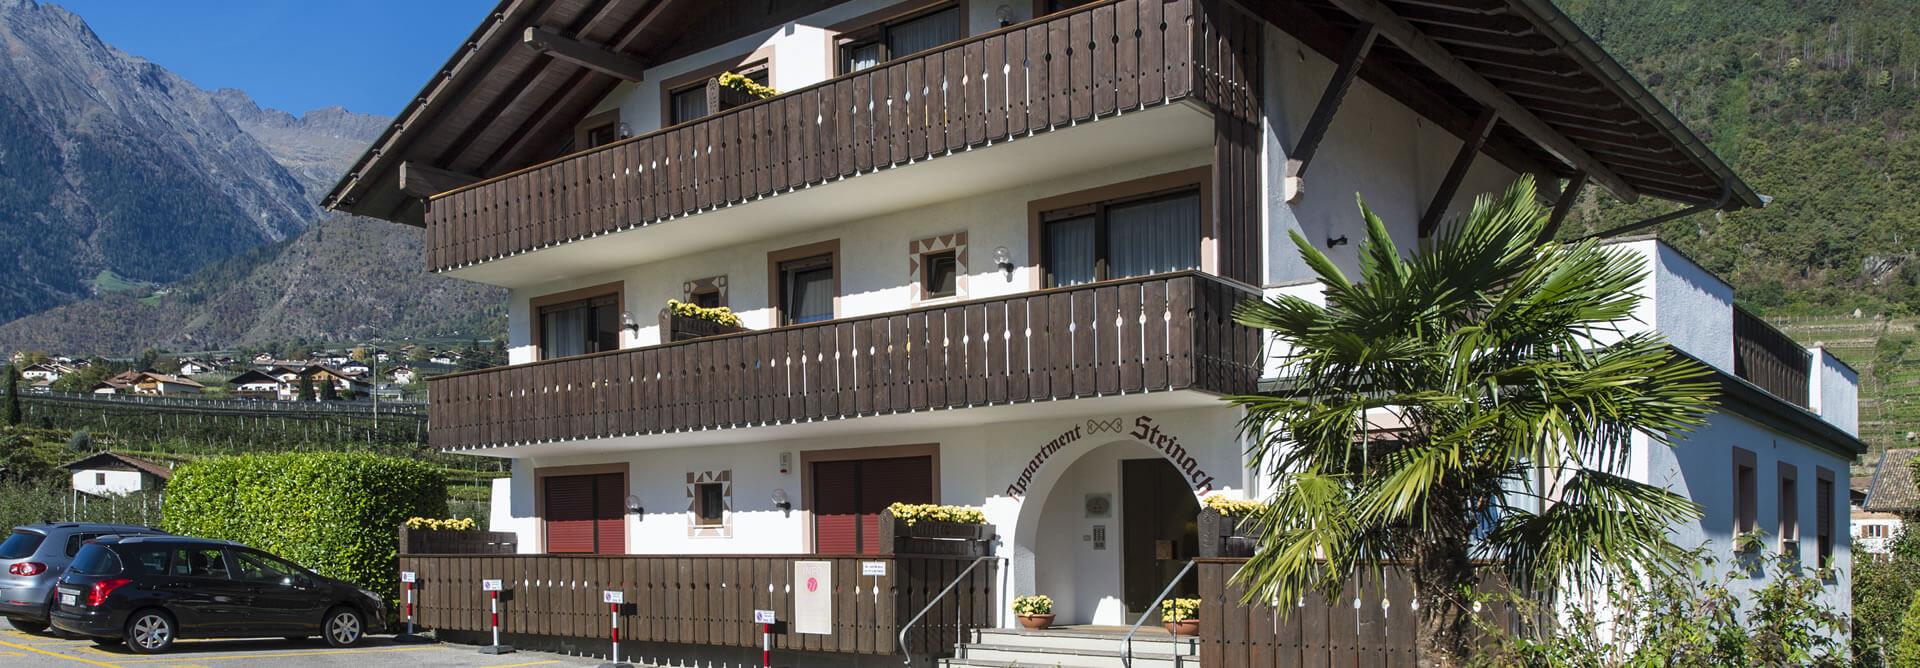 Ihre Ferienwohnung in Südtirol: Residence Steinach